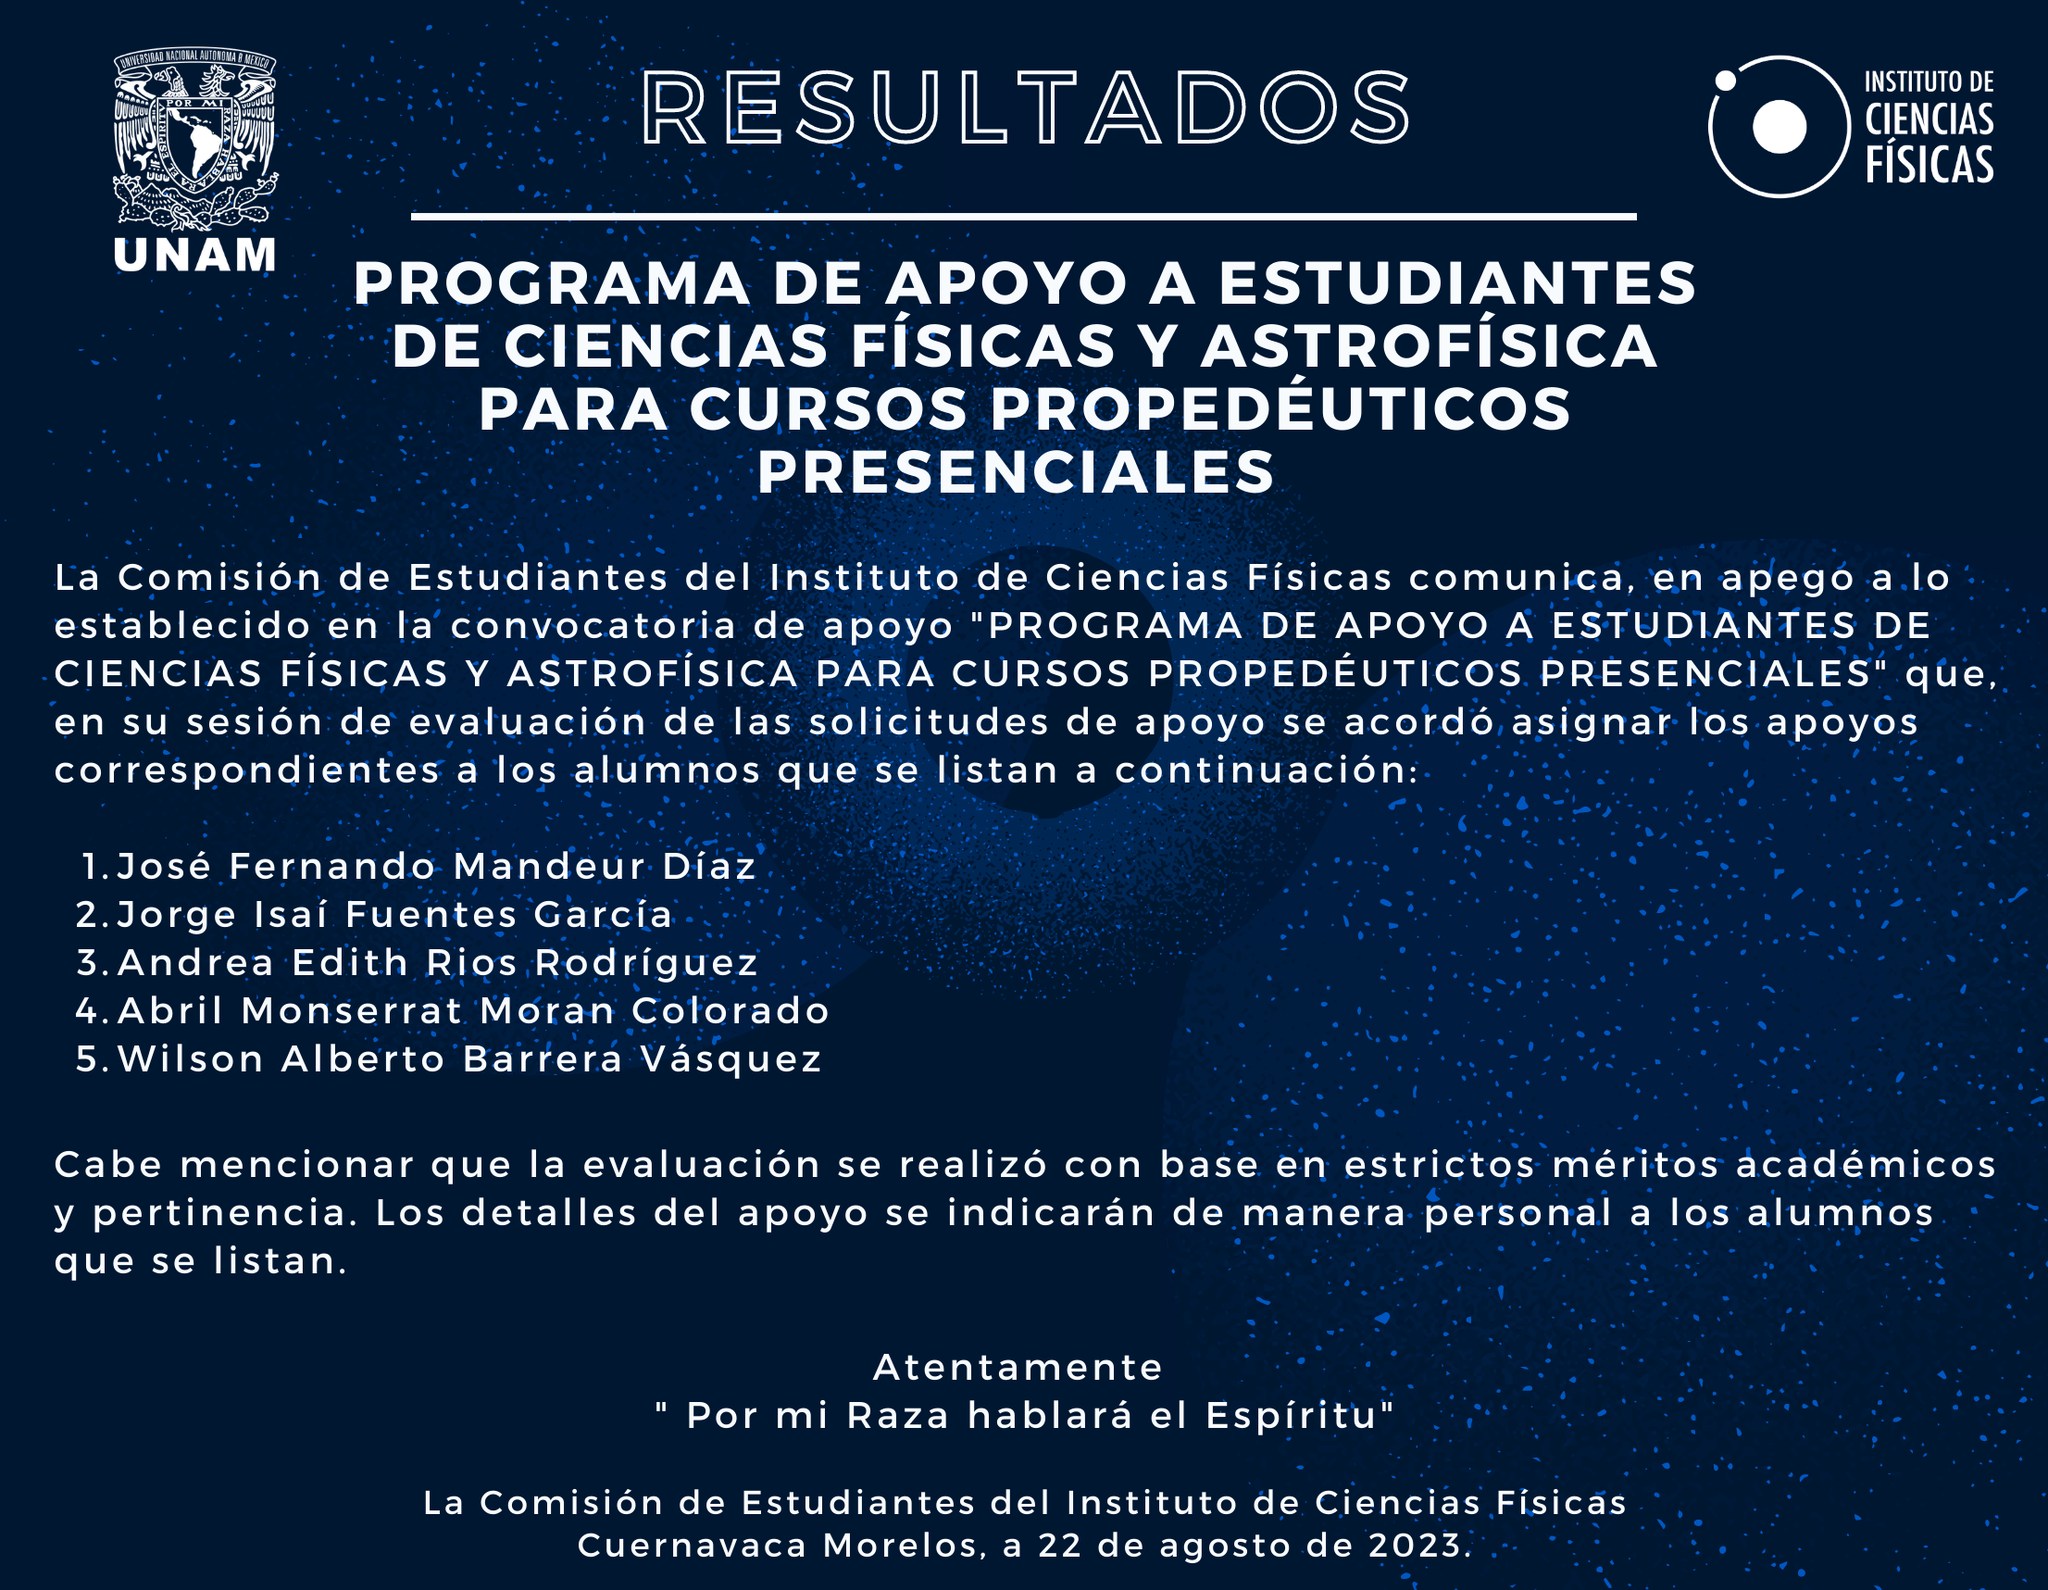 PROGRAMA DE APOYO A ESTUDIANTES DE CIENCIAS FÍSICAS Y ASTROFÍSICA PARA CURSOS PROPEDÉUTICOS PRESENCIALES